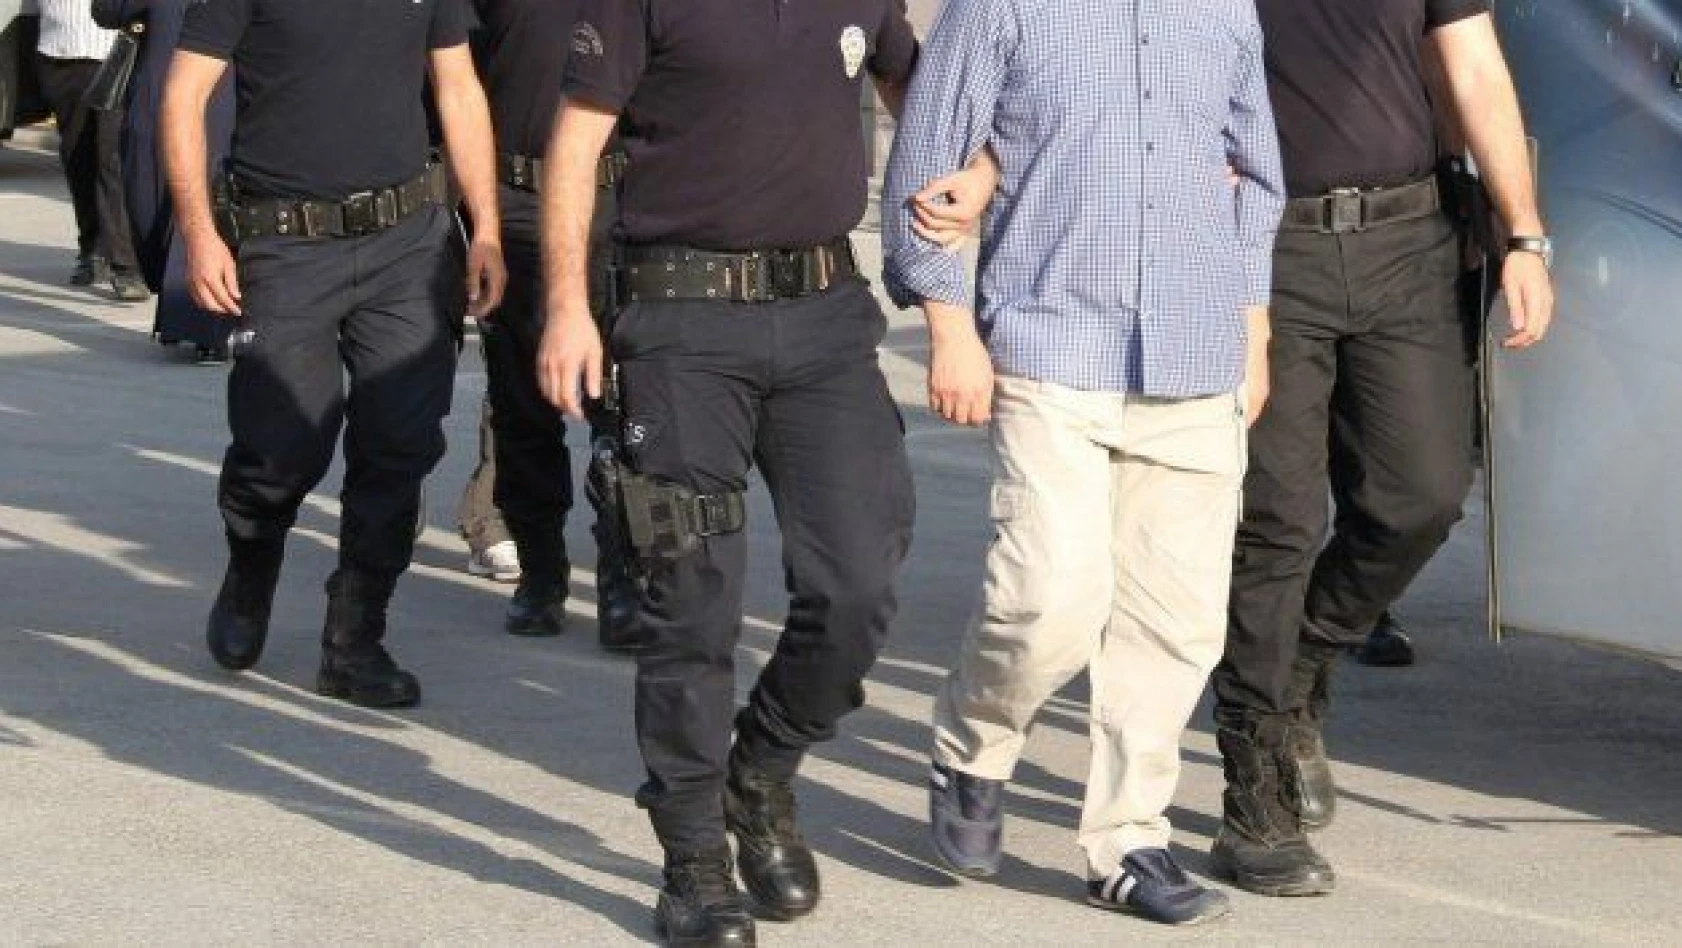 HDP'li 4 belediye başkanına terörden gözaltı